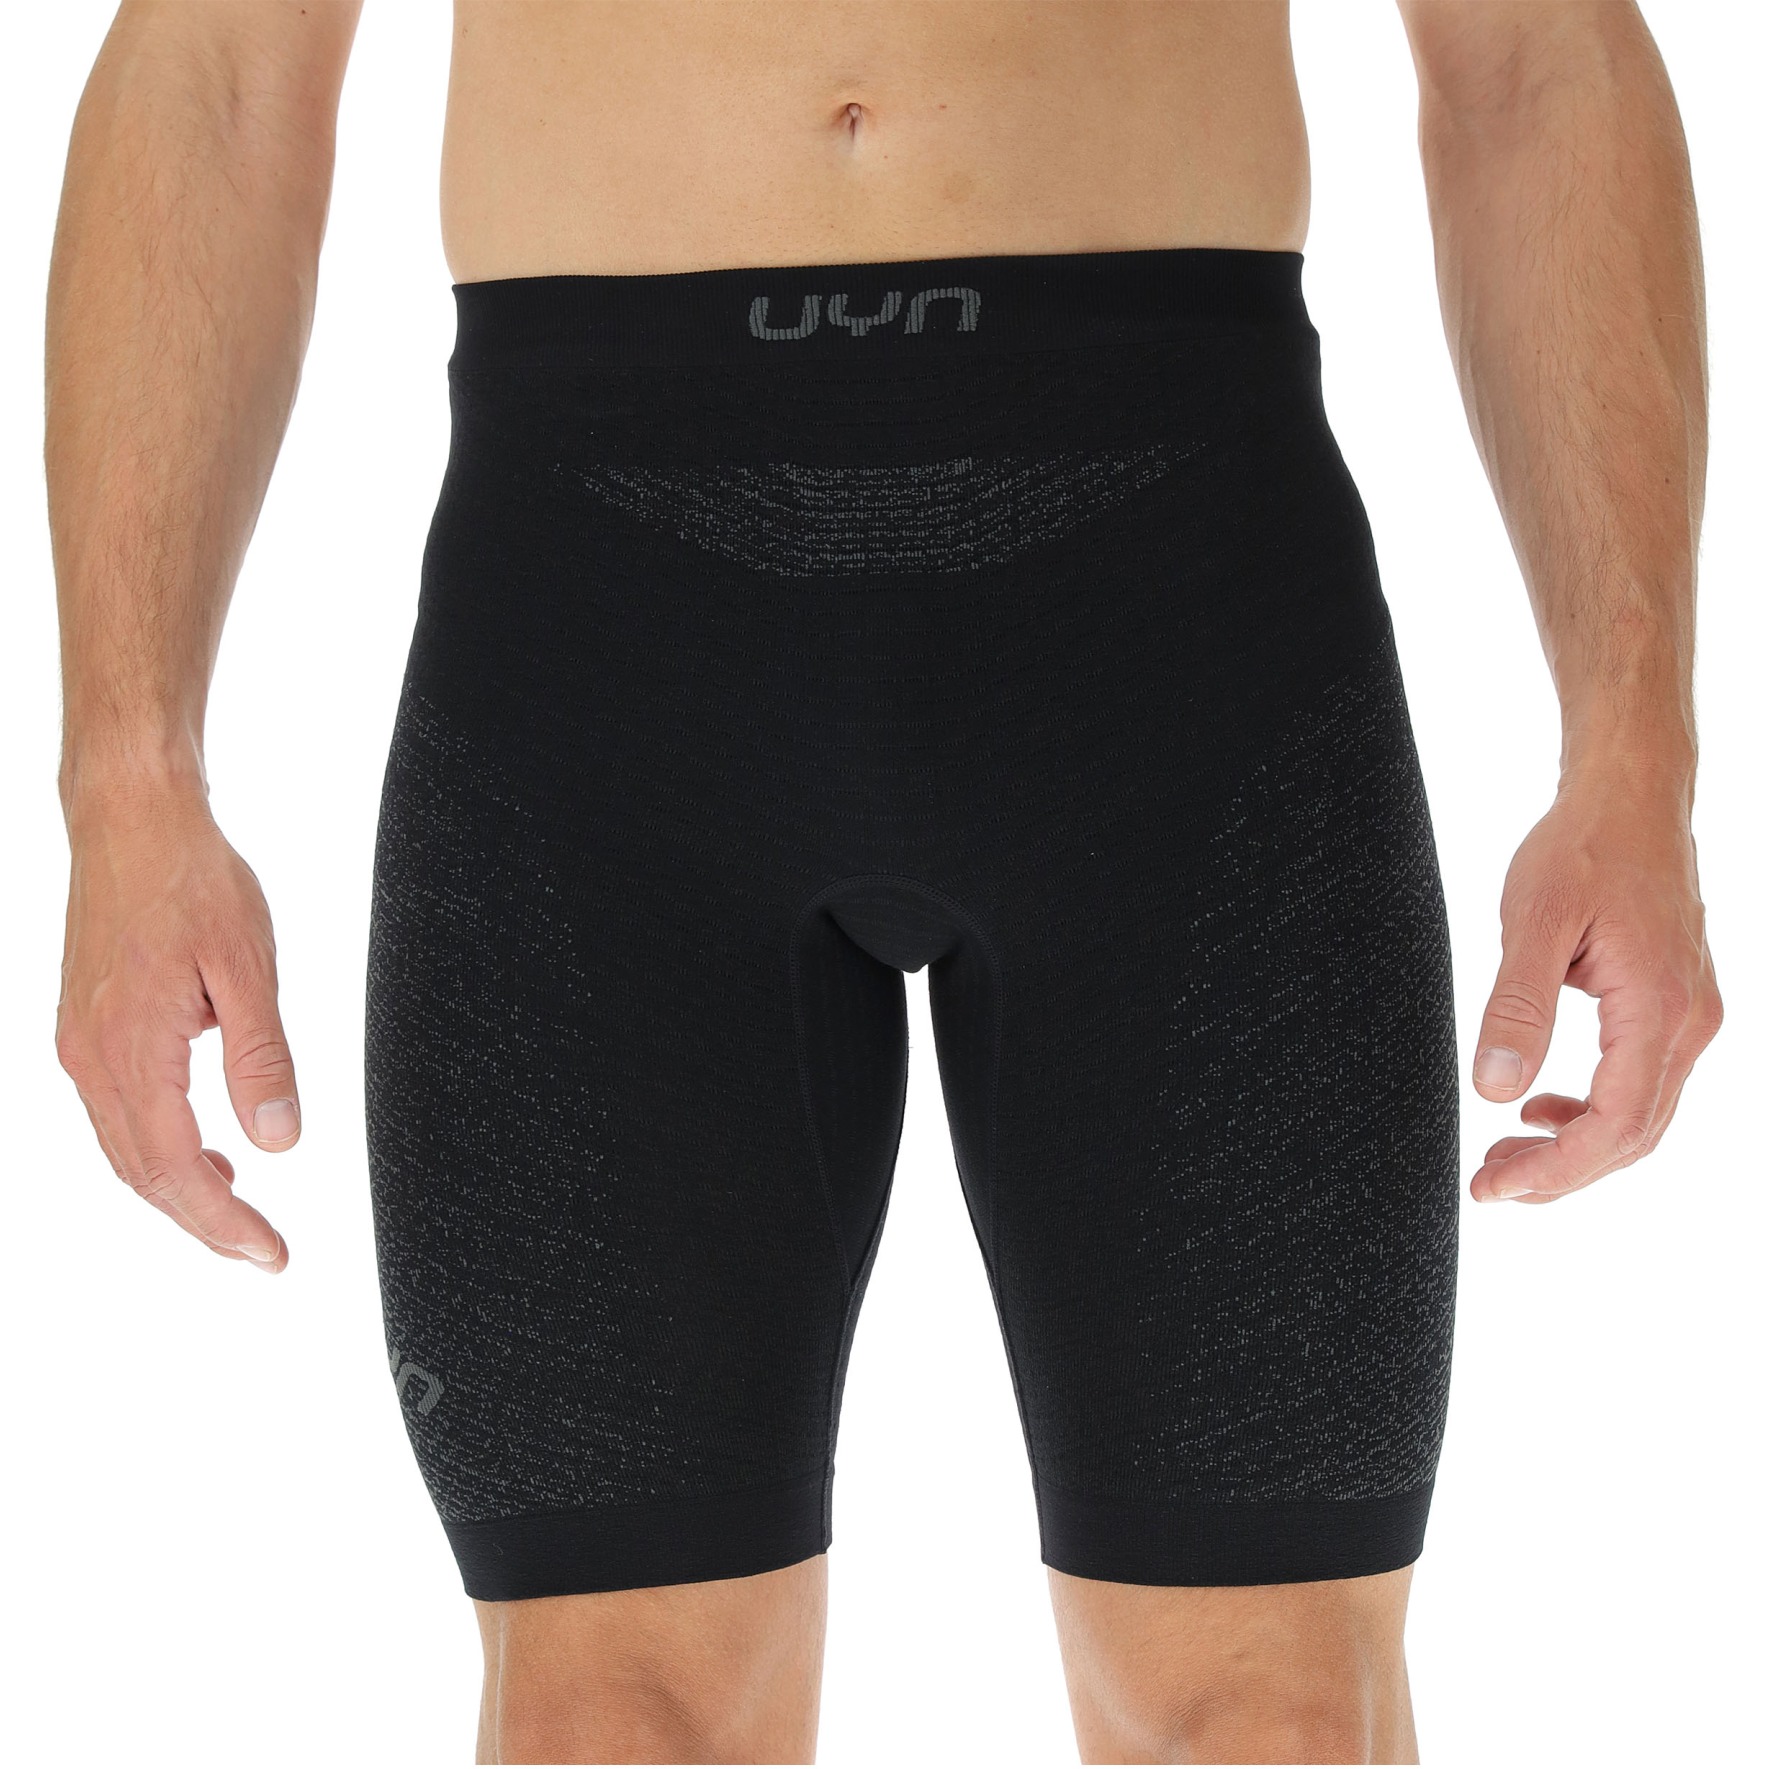 Produktbild von UYN Running Exceleration Tight Shorts Herren - Black/Black/Iron